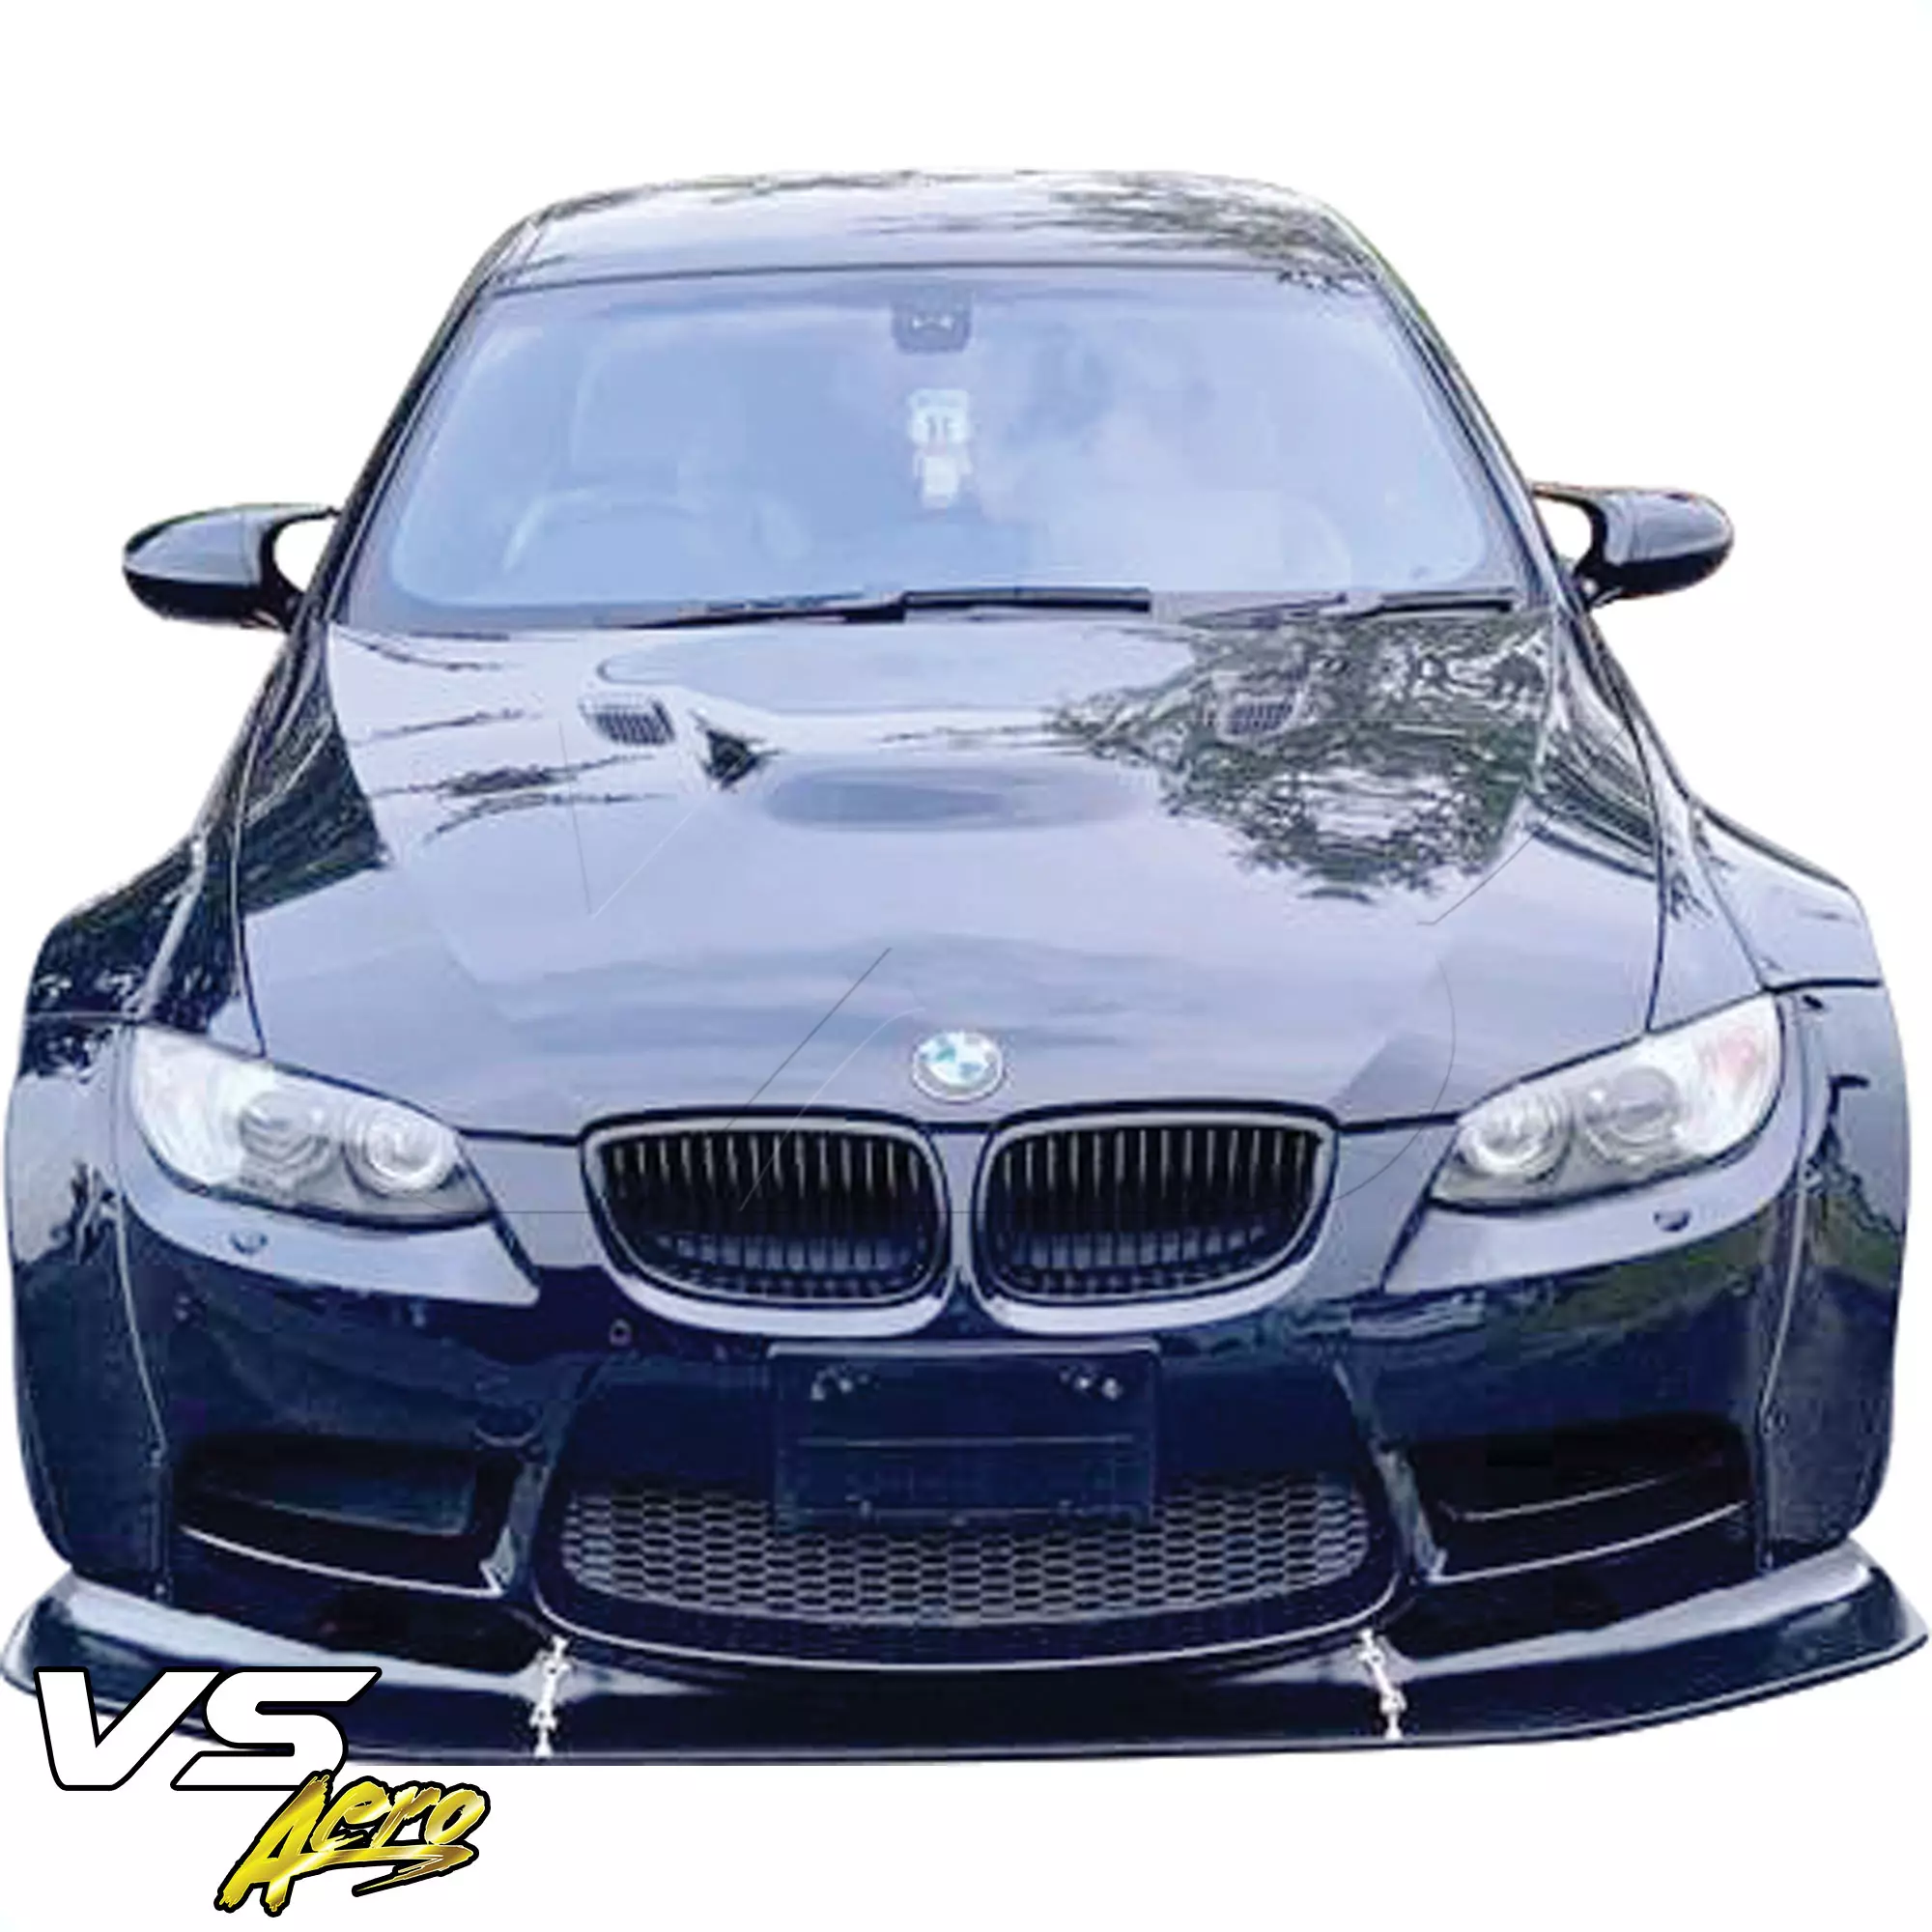 VSaero FRP LBPE Wide Body Kit > BMW M3 E92 2008-2013 > 2dr - Image 6